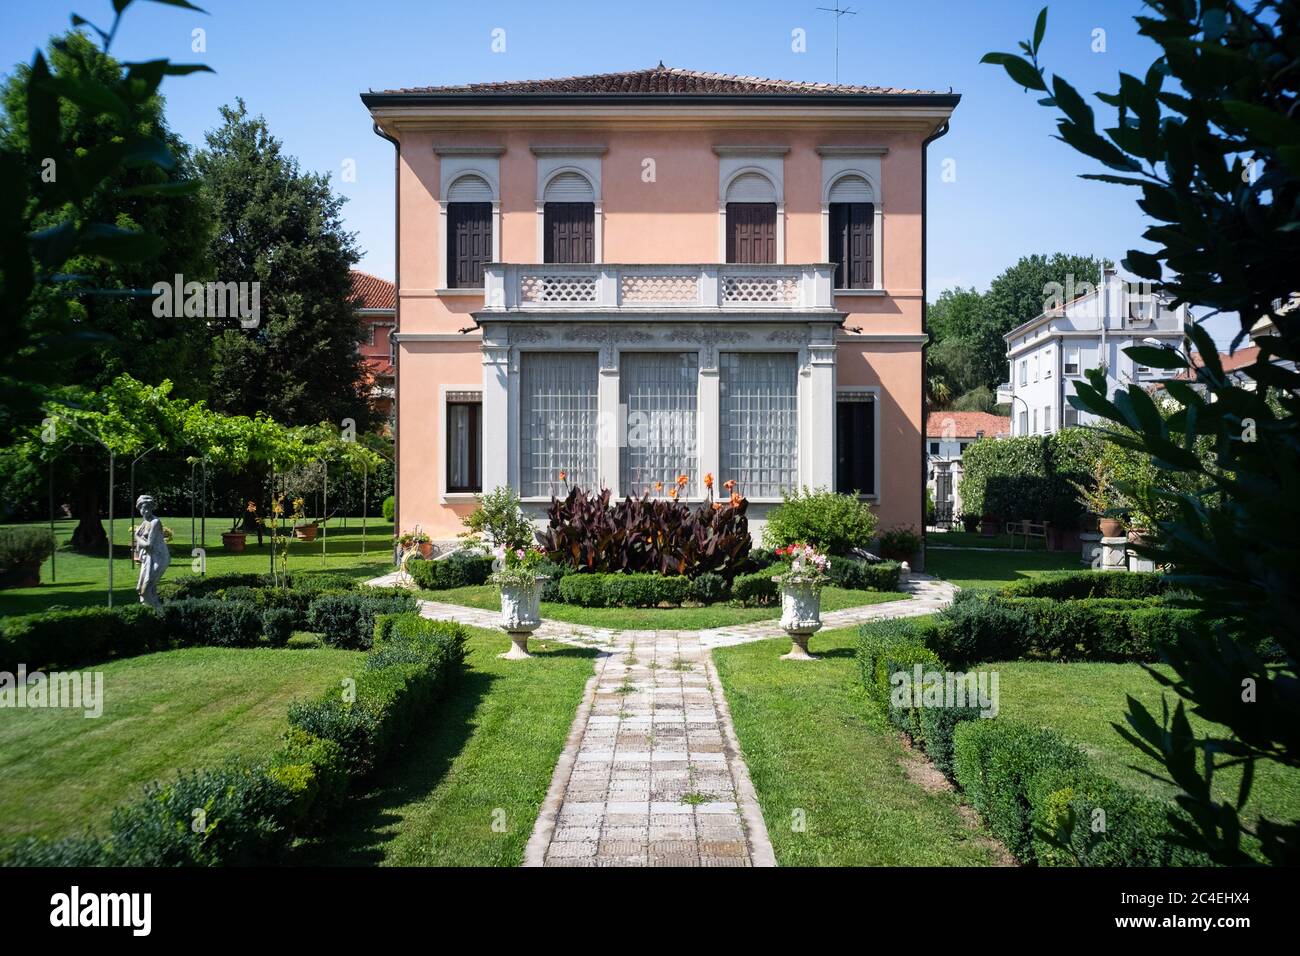 Una tipica villa veneziana, con giardino gorgeo Foto Stock